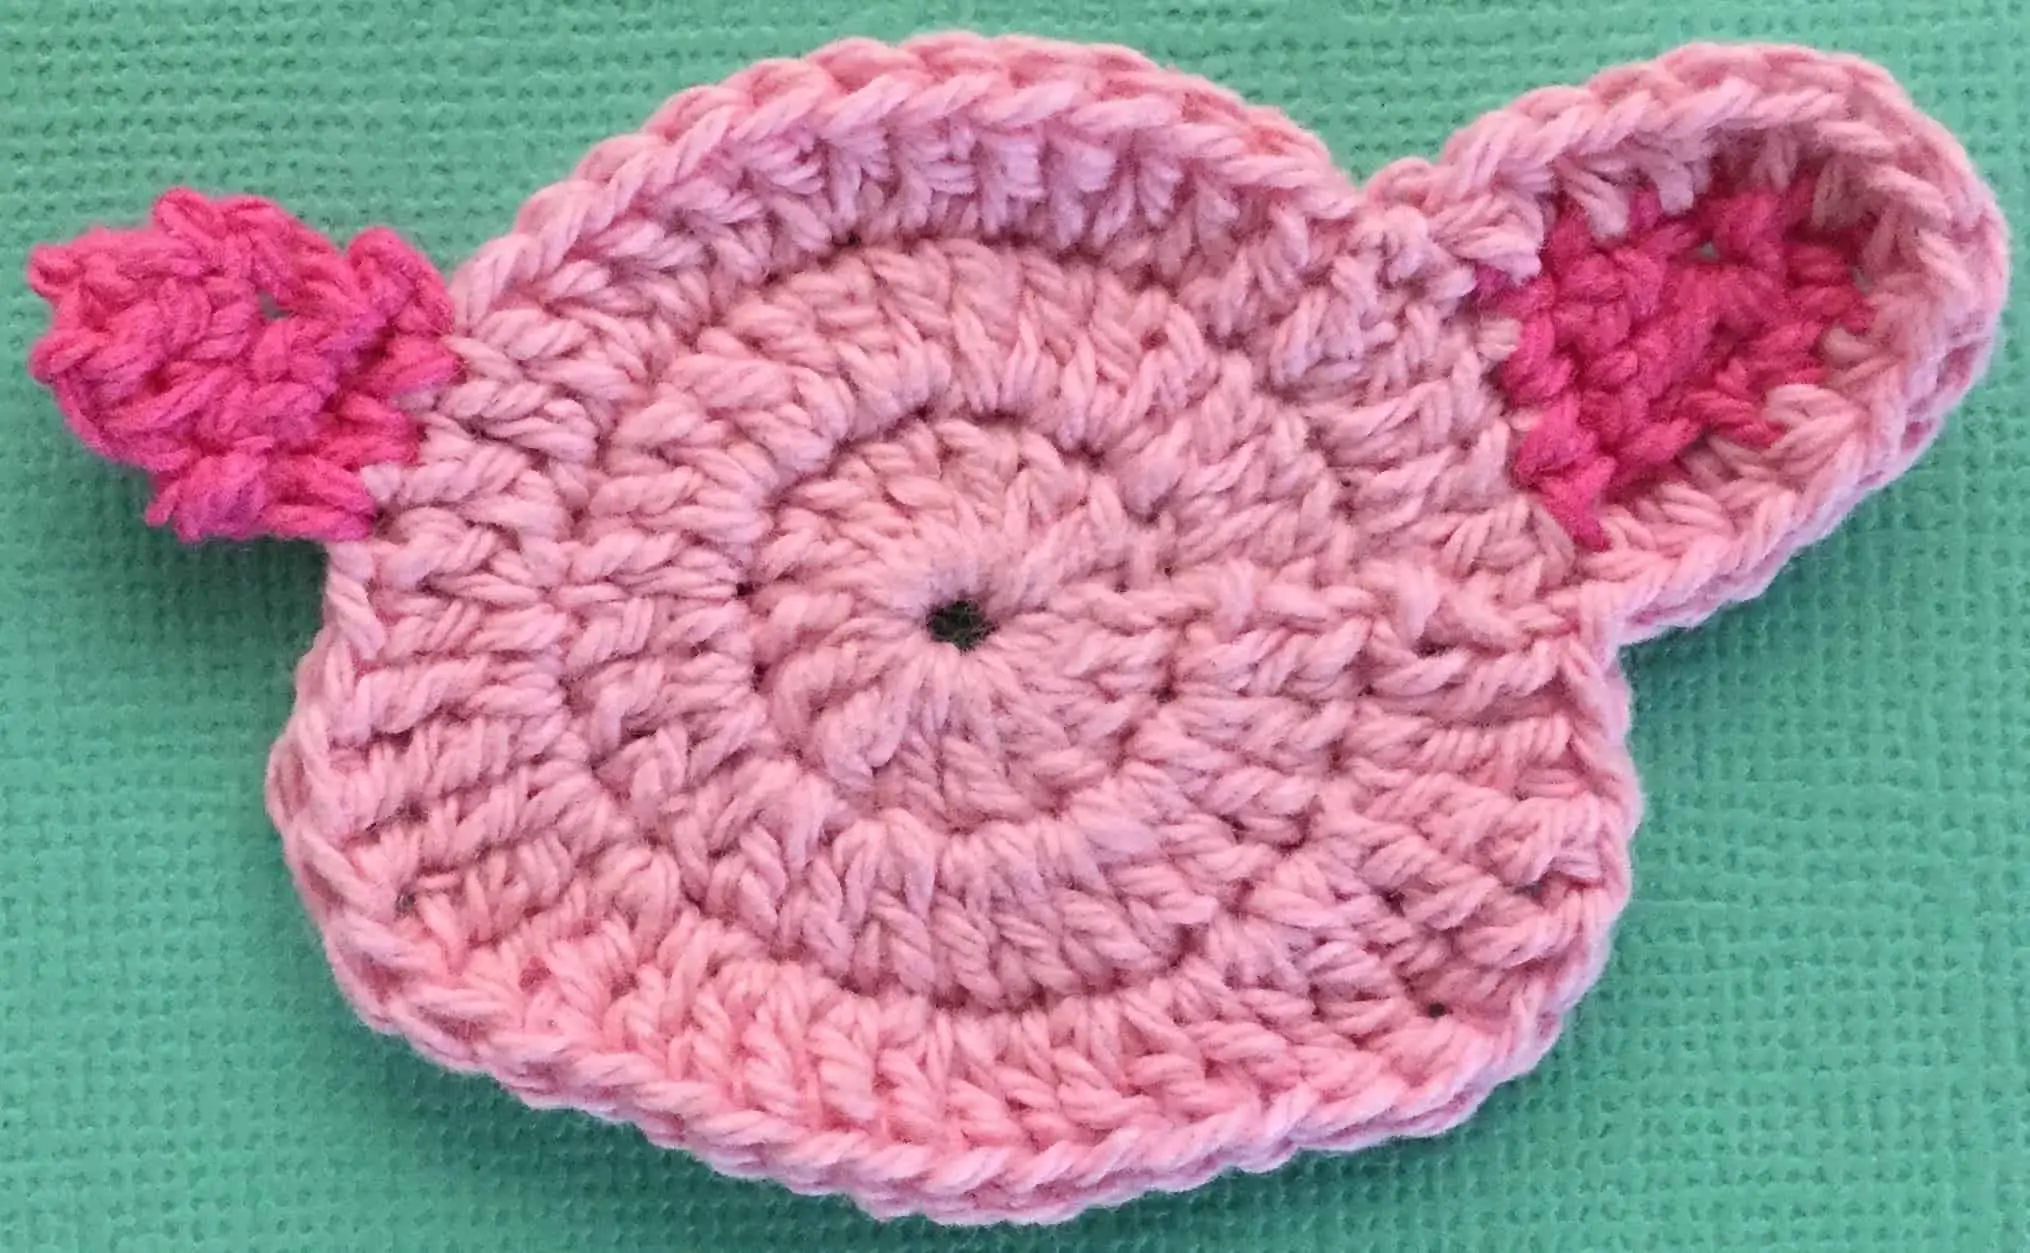 Crochet pig beginning second ear